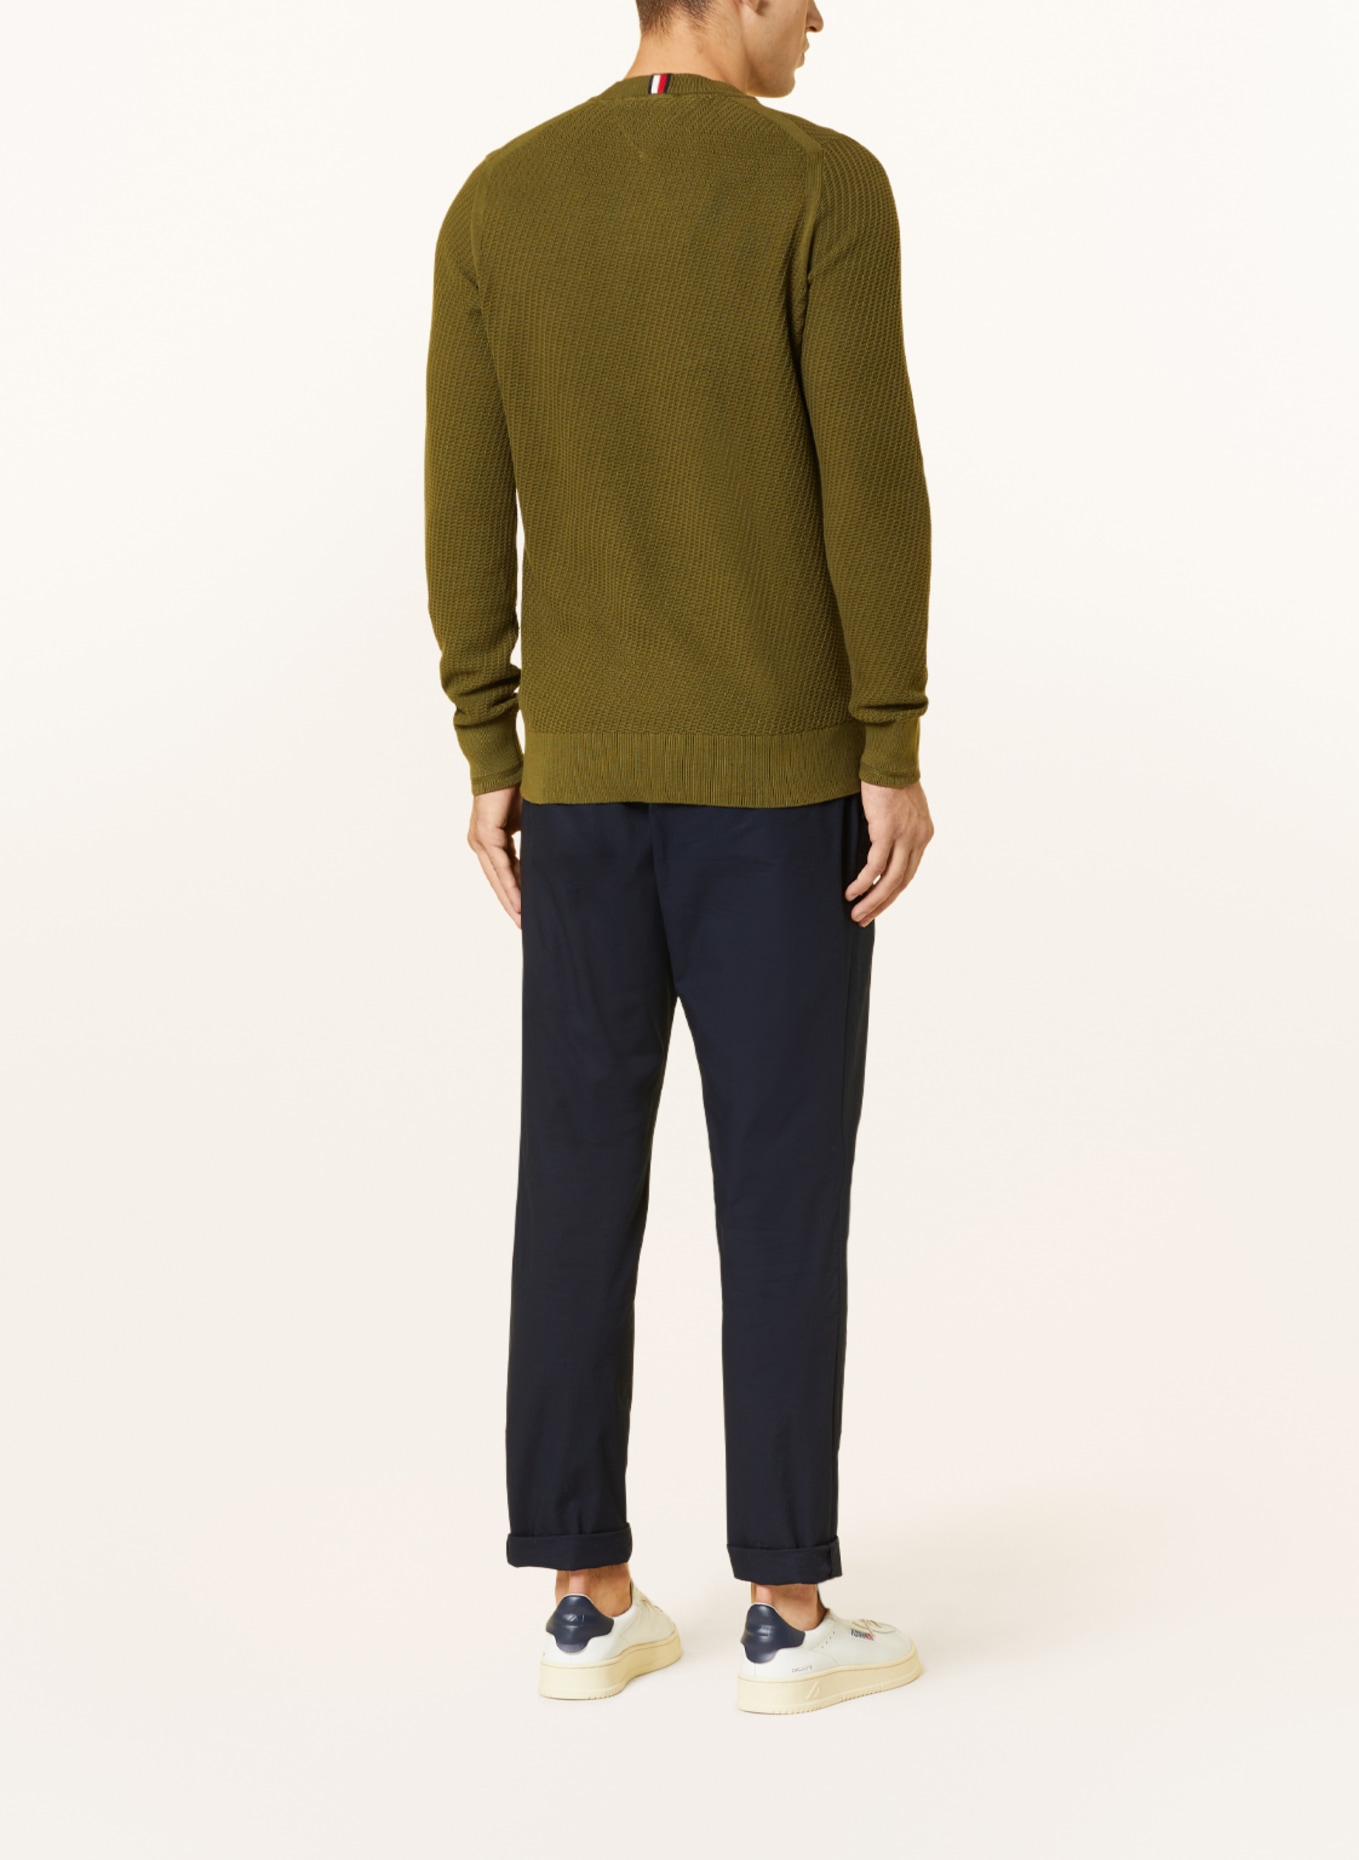 TOMMY HILFIGER Sweater, Color: OLIVE (Image 3)